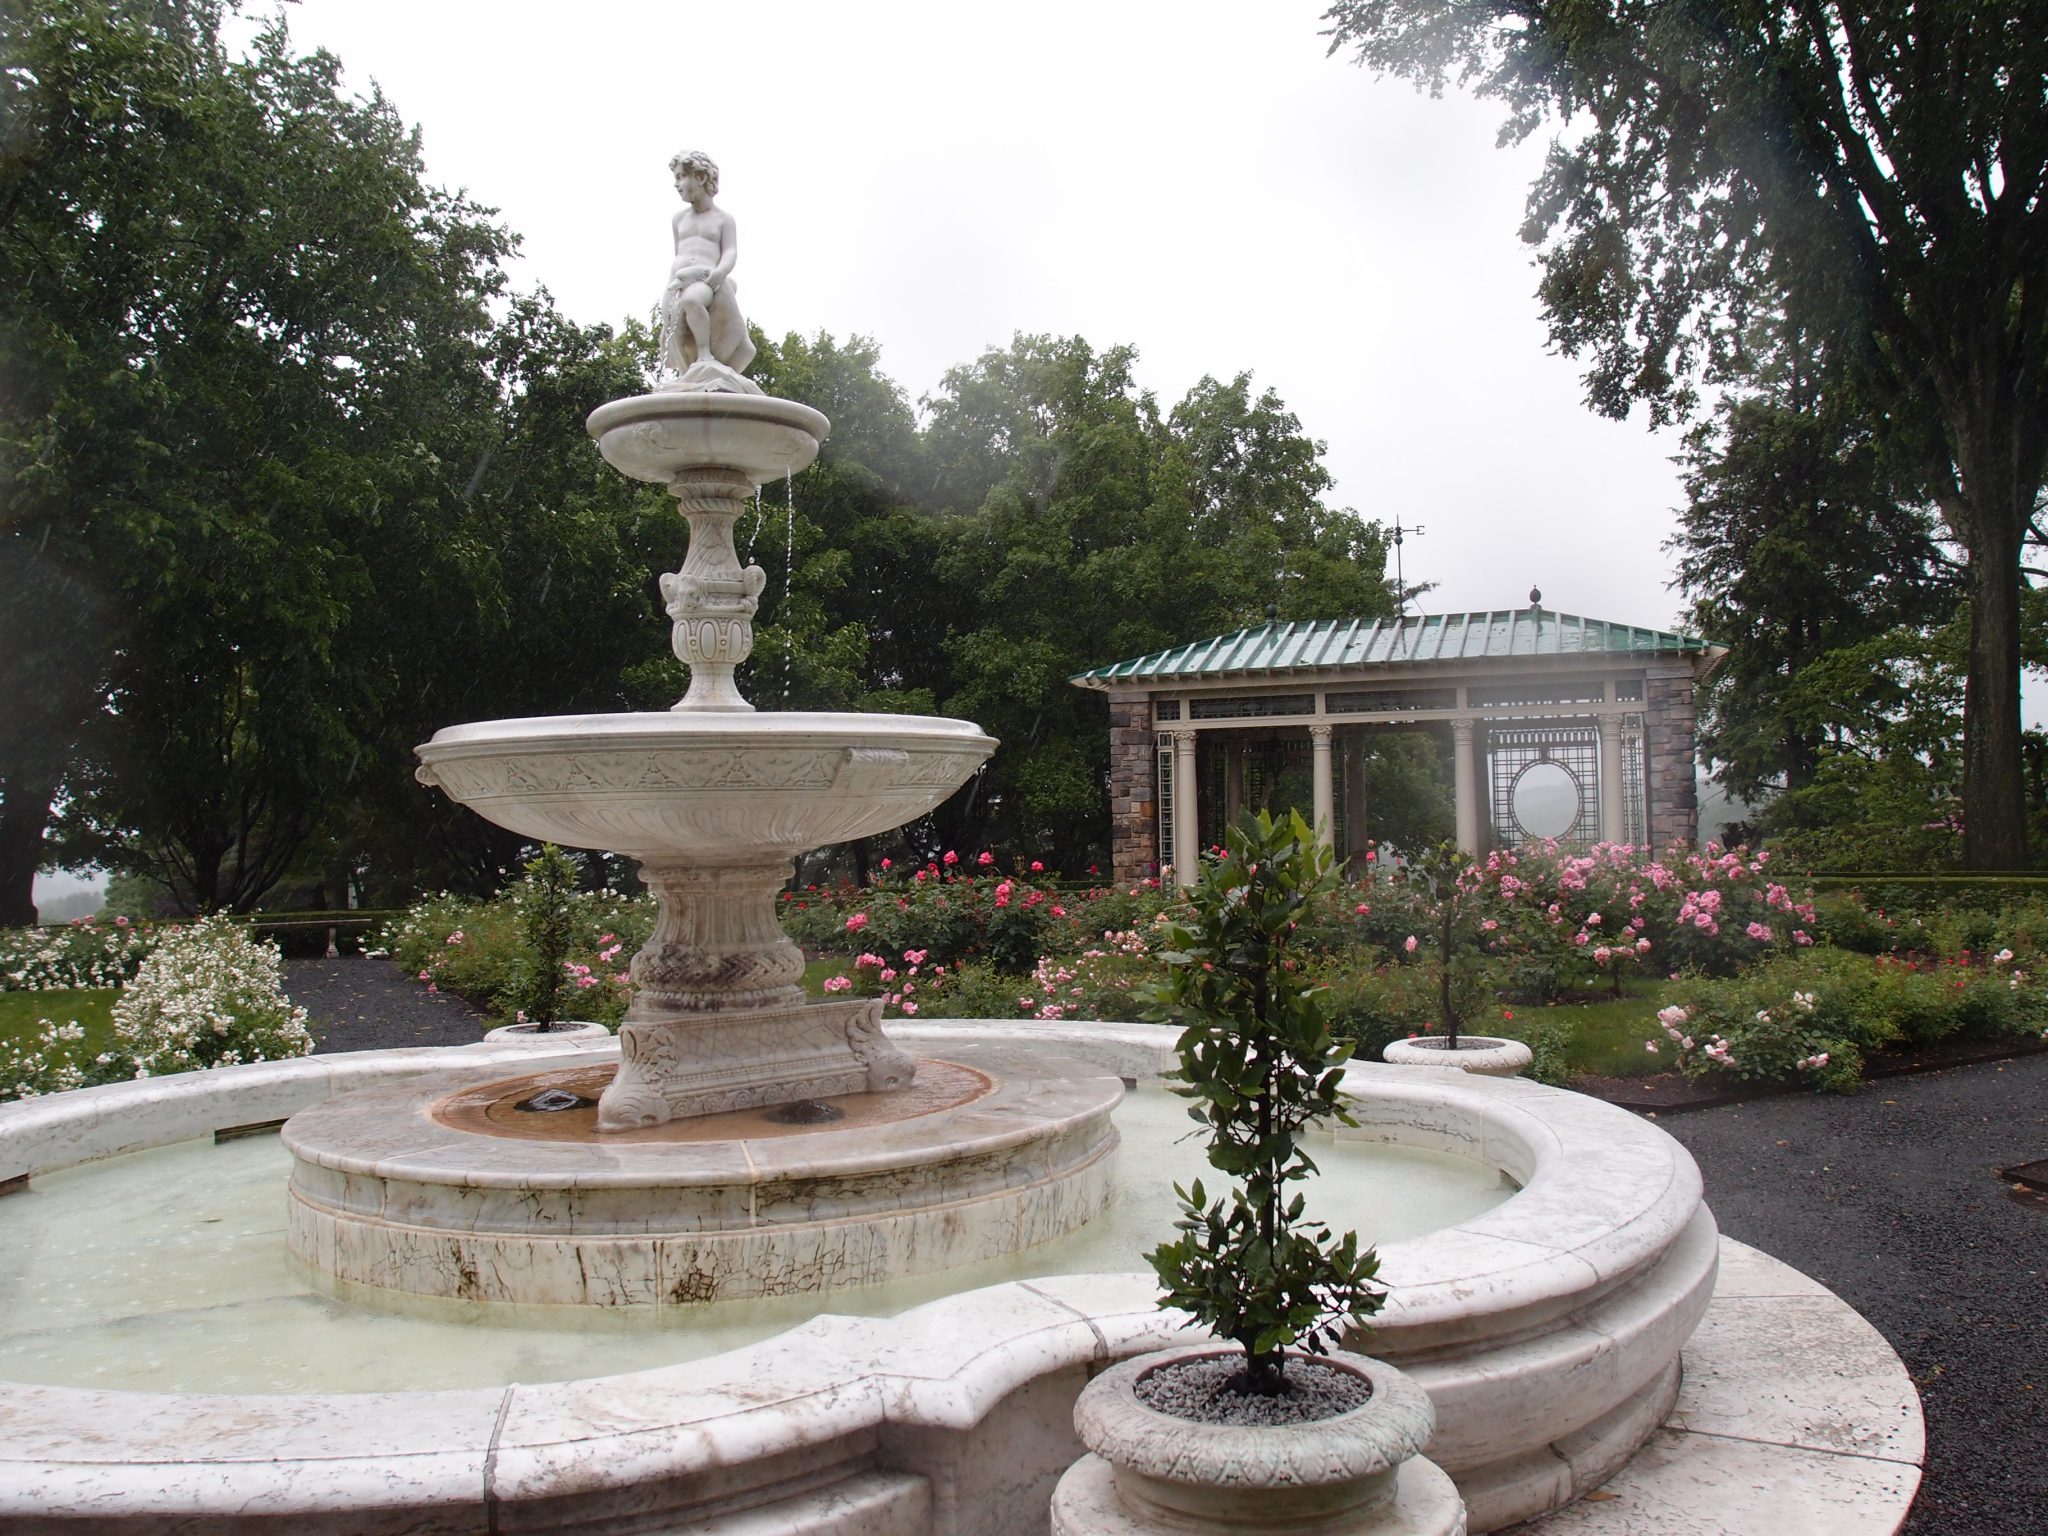 A closer look a the Rose Garden's Fountain